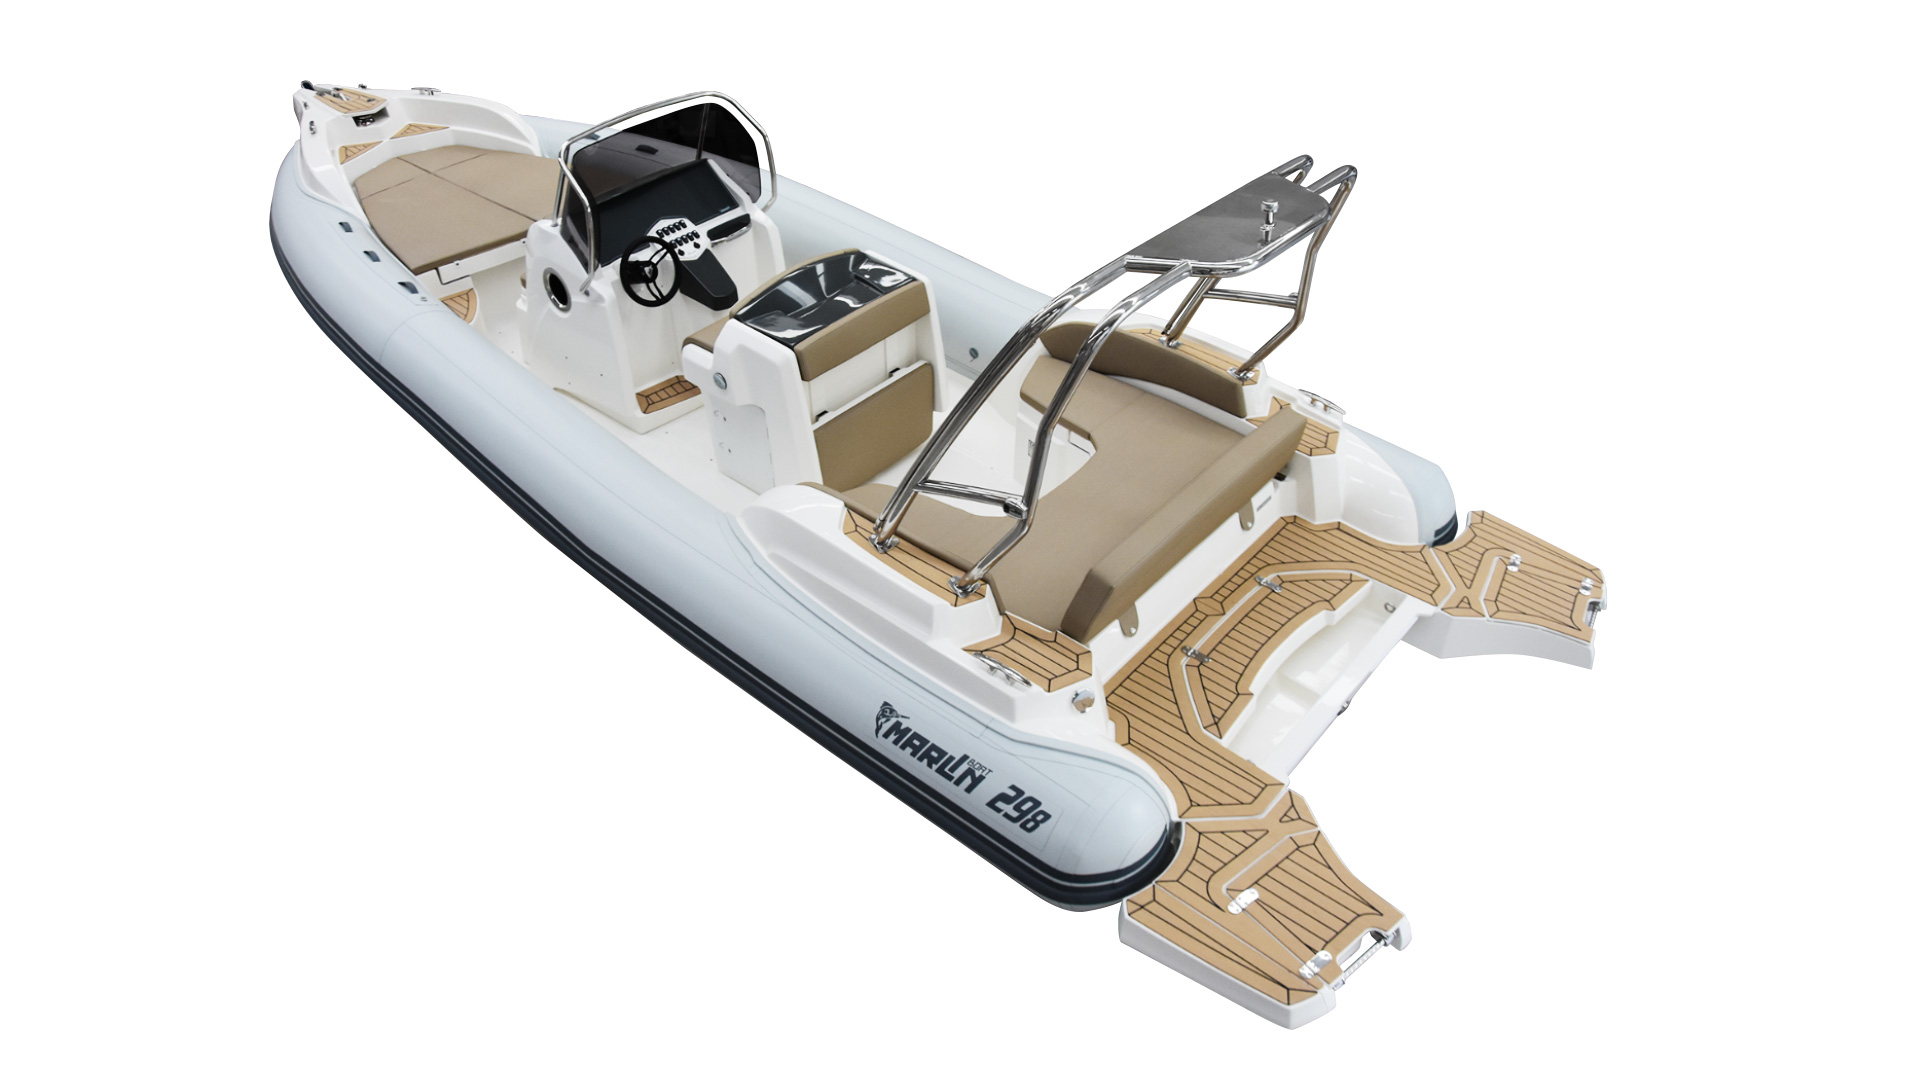 Marlin Boat - Gommone Fuoribordo Modello 298